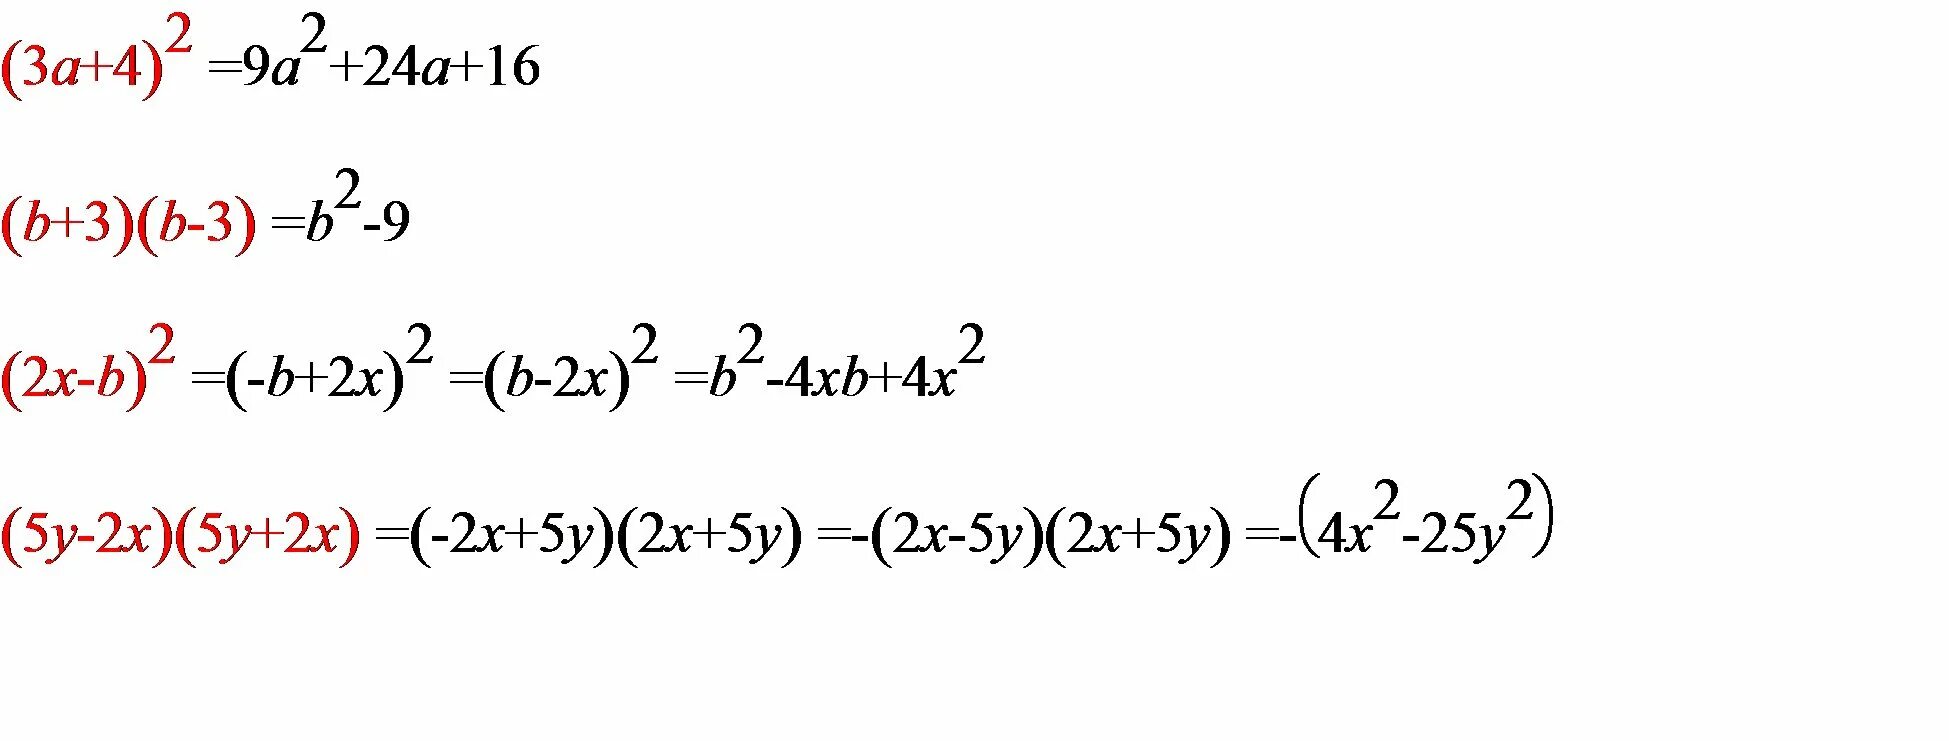 A x x n 2x 6. Преобразуйте в многочлен b+3 b-3. (X-Y)^2(X+Y) преобразование в многочлен. Преобразуйте выражение в многочлен.